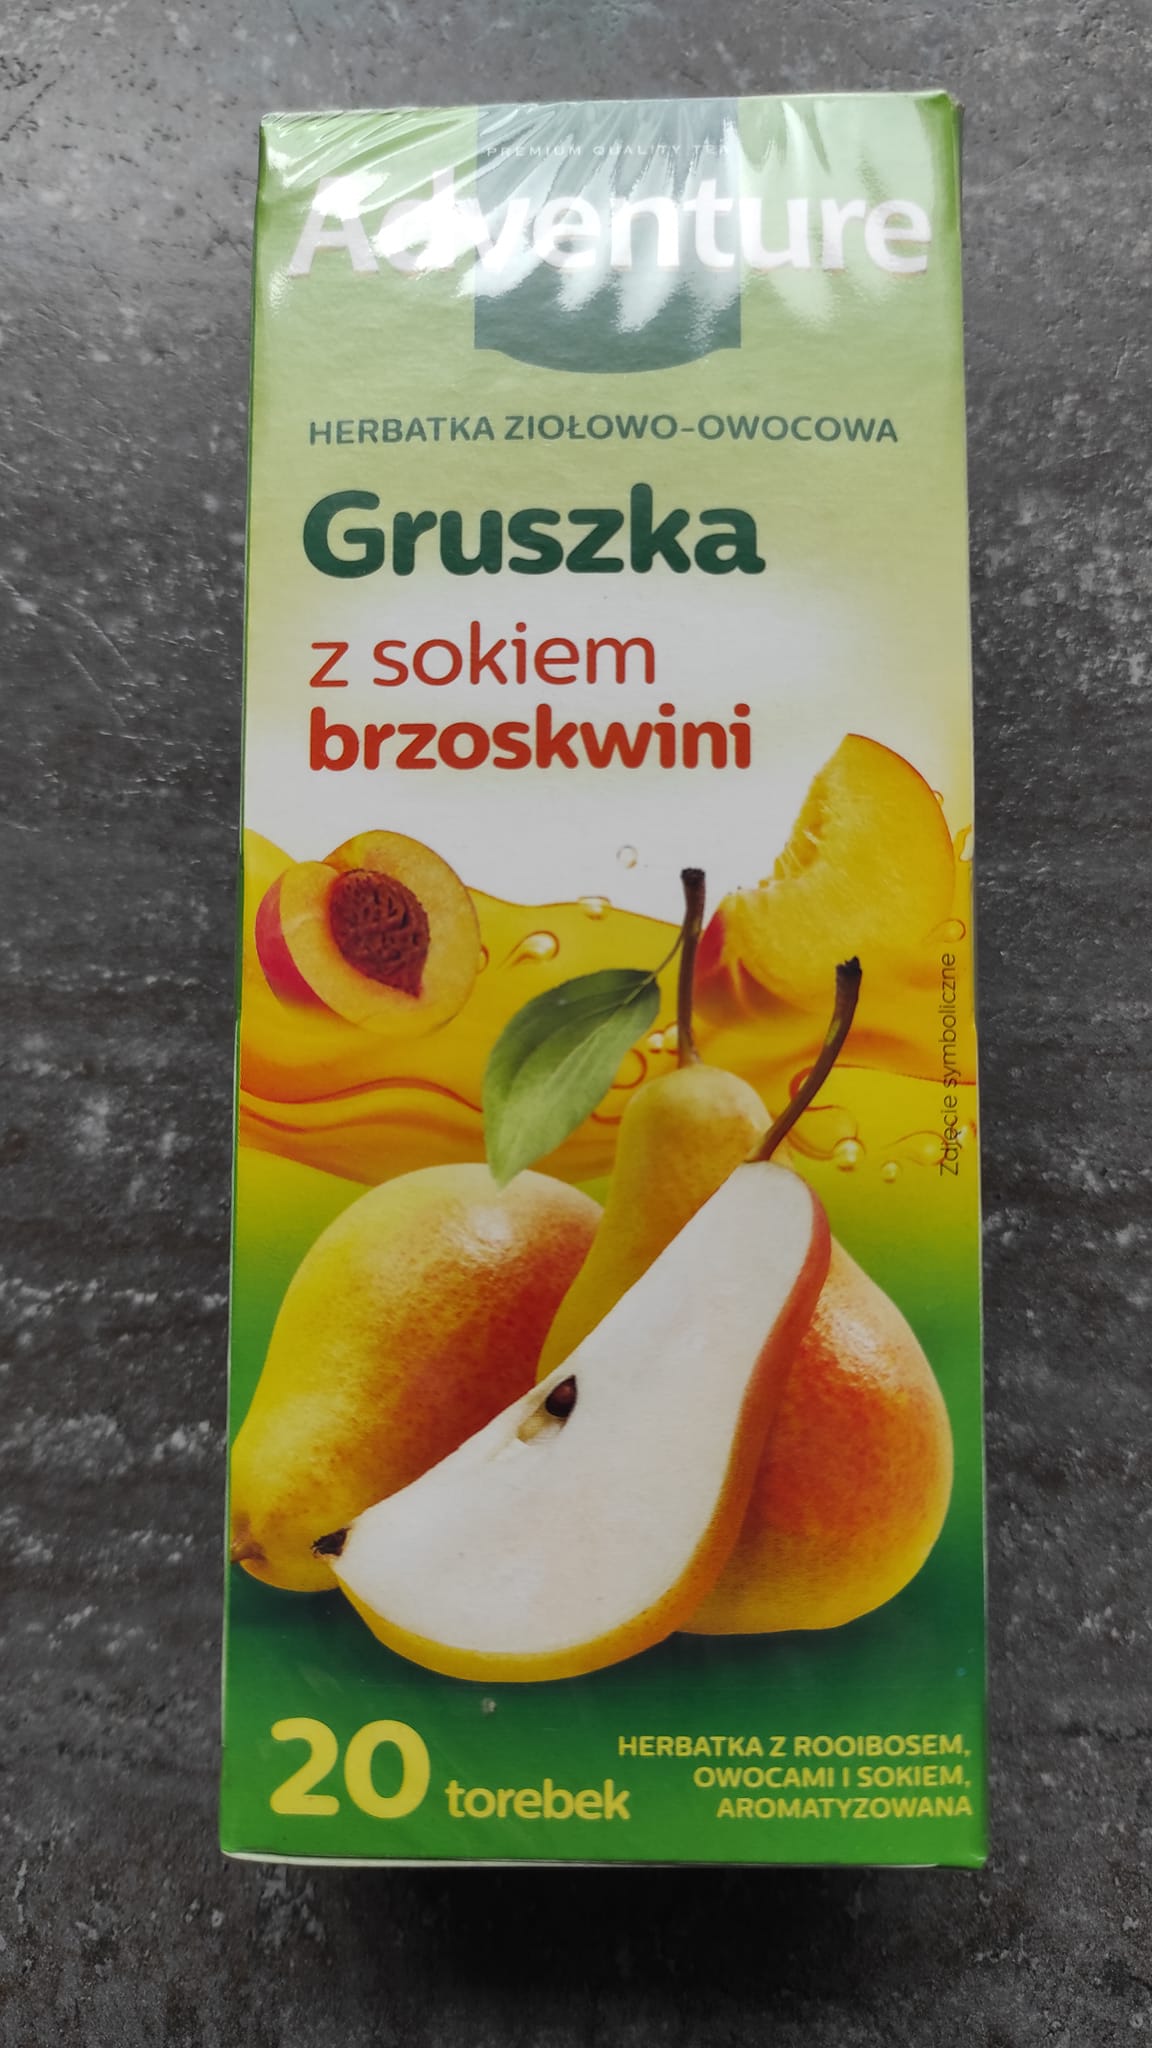 Herbatka ziołowo-owocowa Gruszka – Adventure 5 (1)